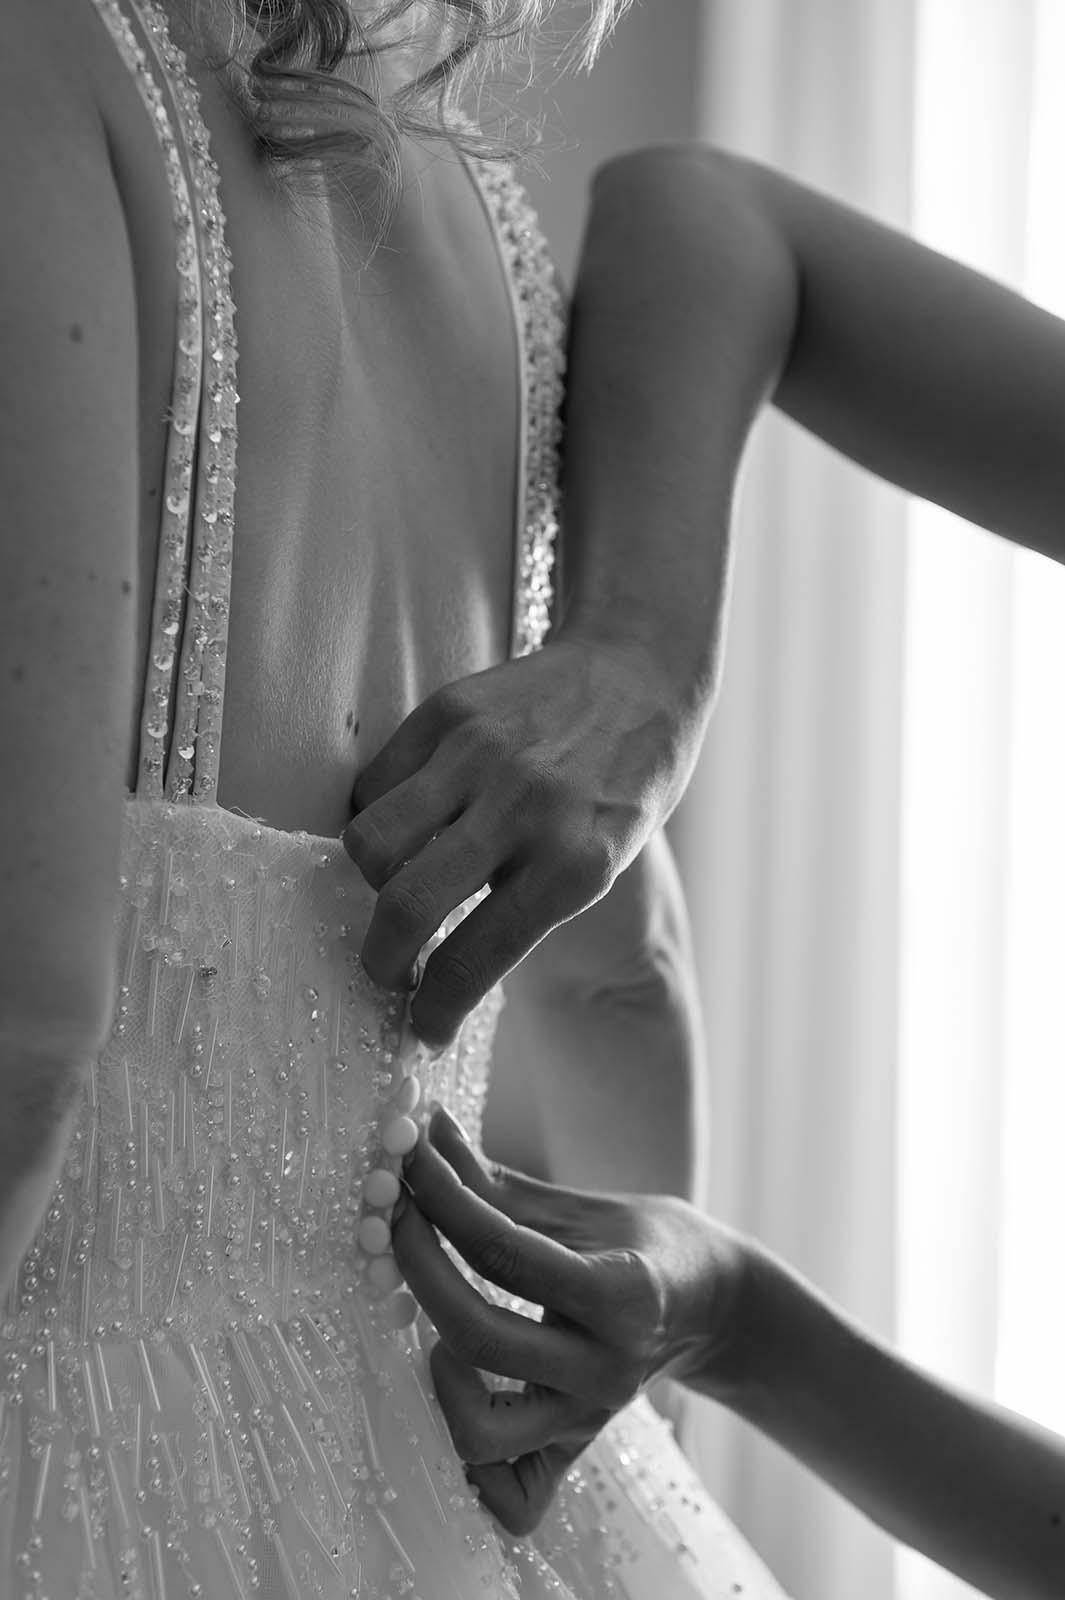 accrochage des boutons d'une robe de mariée